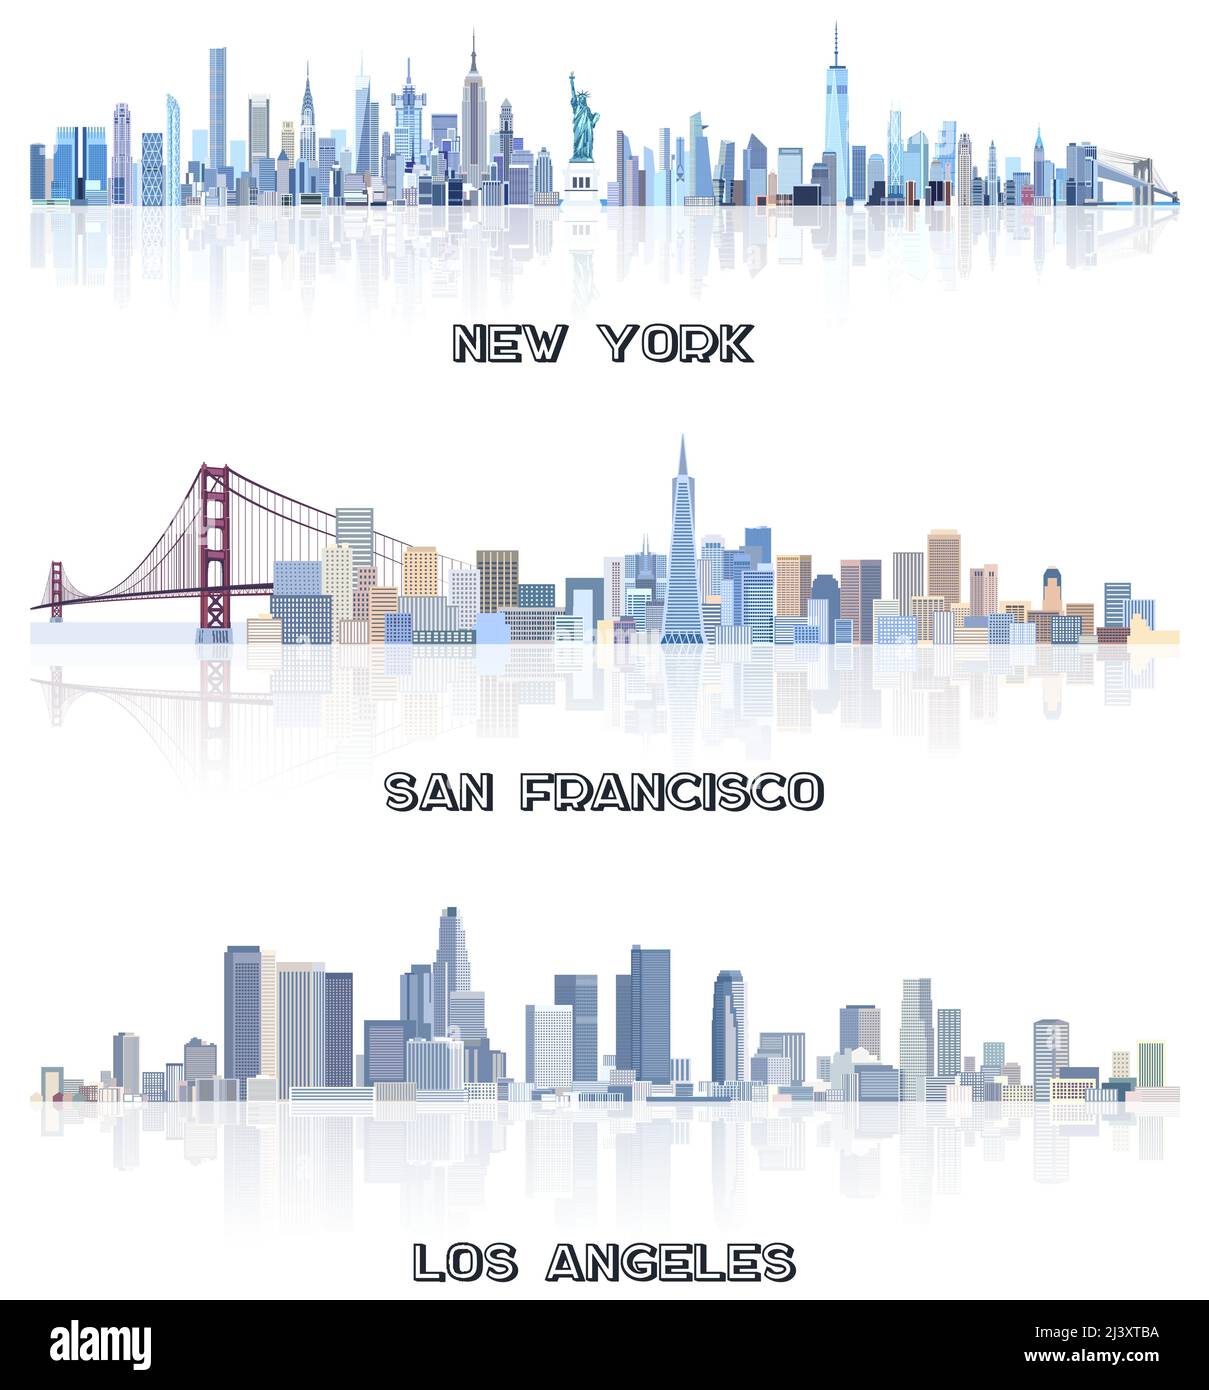 Collection vectorielle des États-Unis cityscapes:New York, San Francisco, Los Angeles Skylines en teintes de couleur bleue. Сrystal style esthétique Illustration de Vecteur